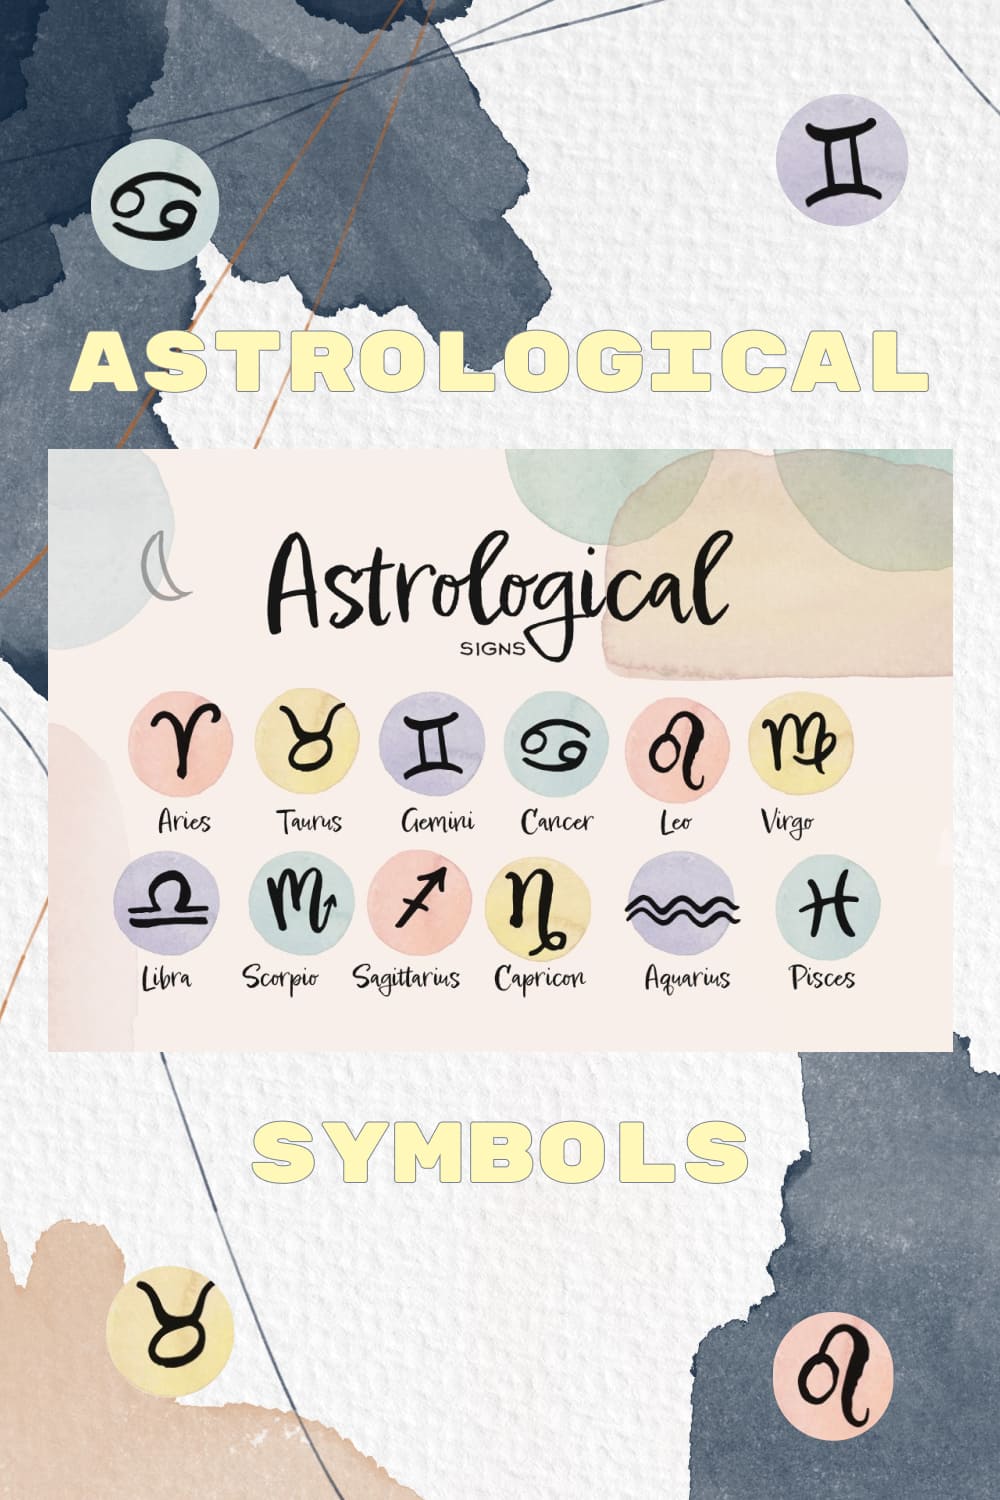 Astrological symbols.